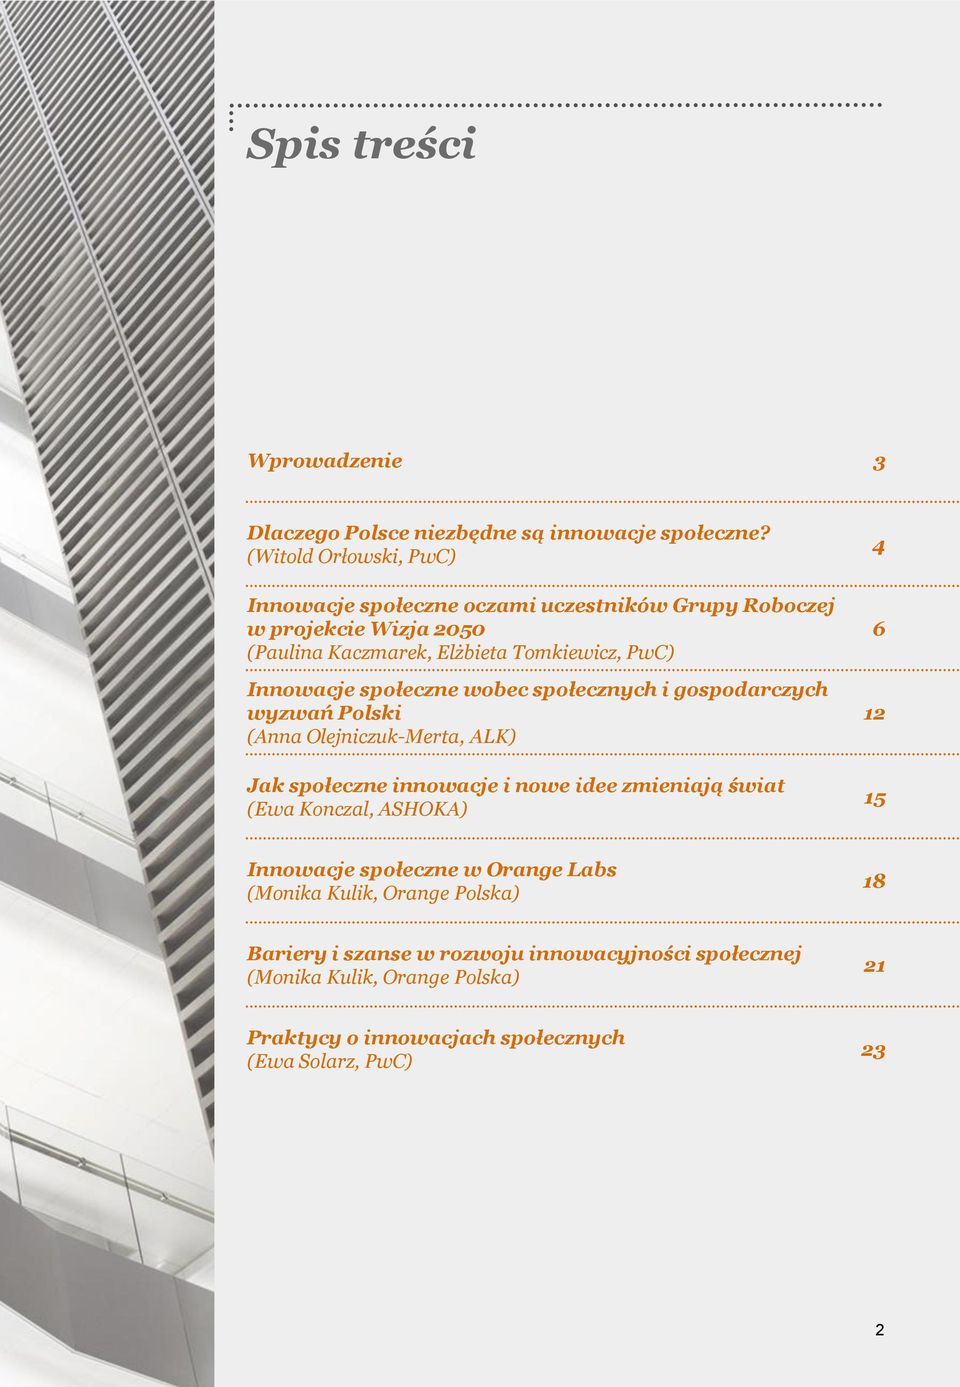 Innowacje społeczne wobec społecznych i gospodarczych wyzwań Polski (Anna Olejniczuk-Merta, ALK) Jak społeczne innowacje i nowe idee zmieniają świat (Ewa